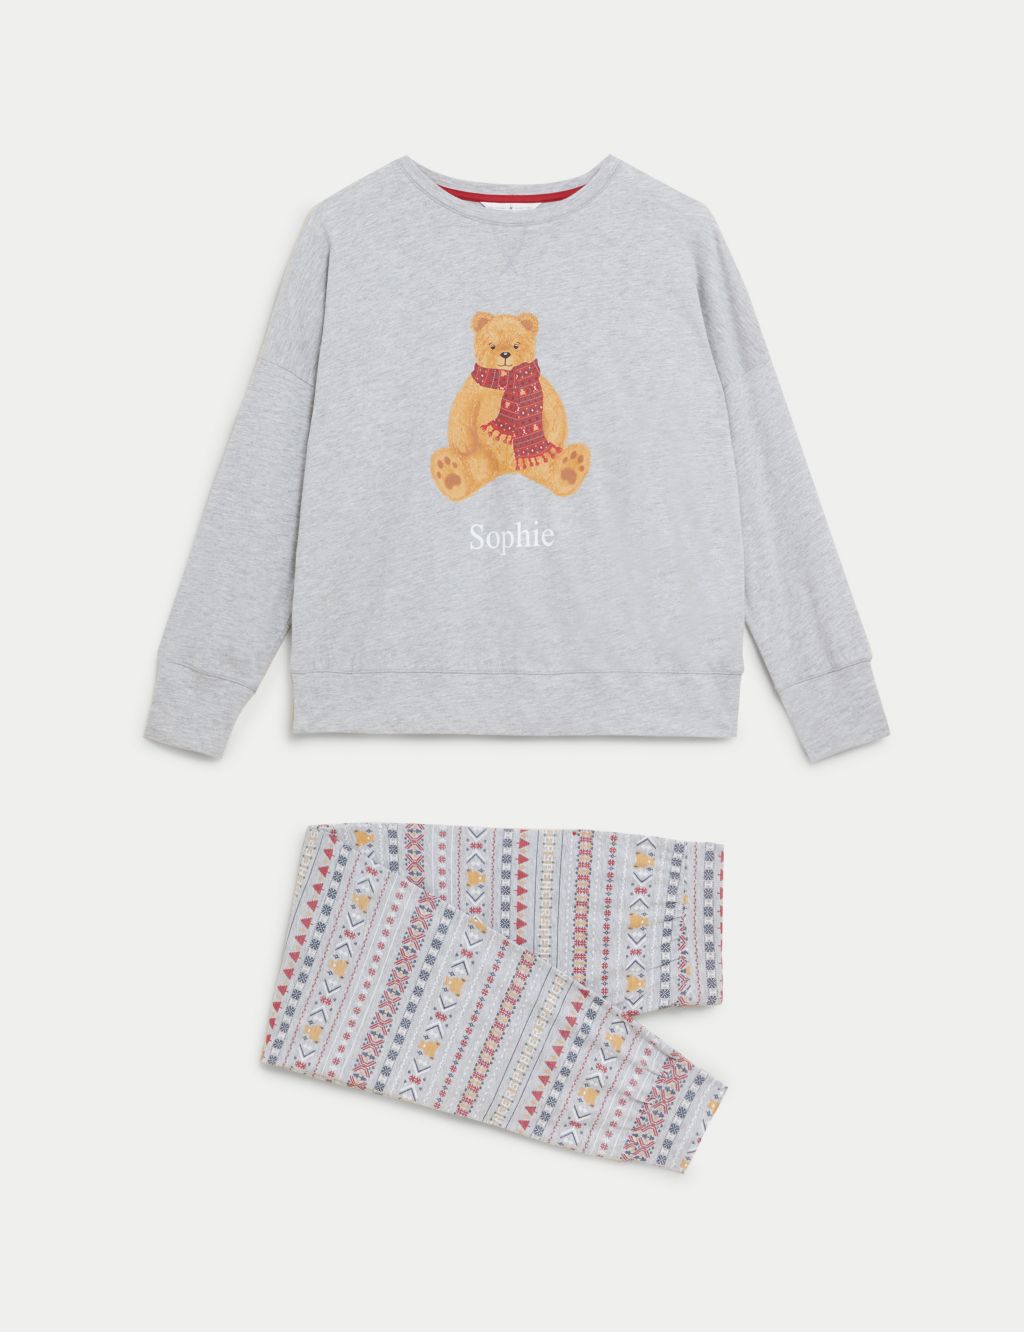 Personalised Women's Spencer Bear Pyjamas image 1